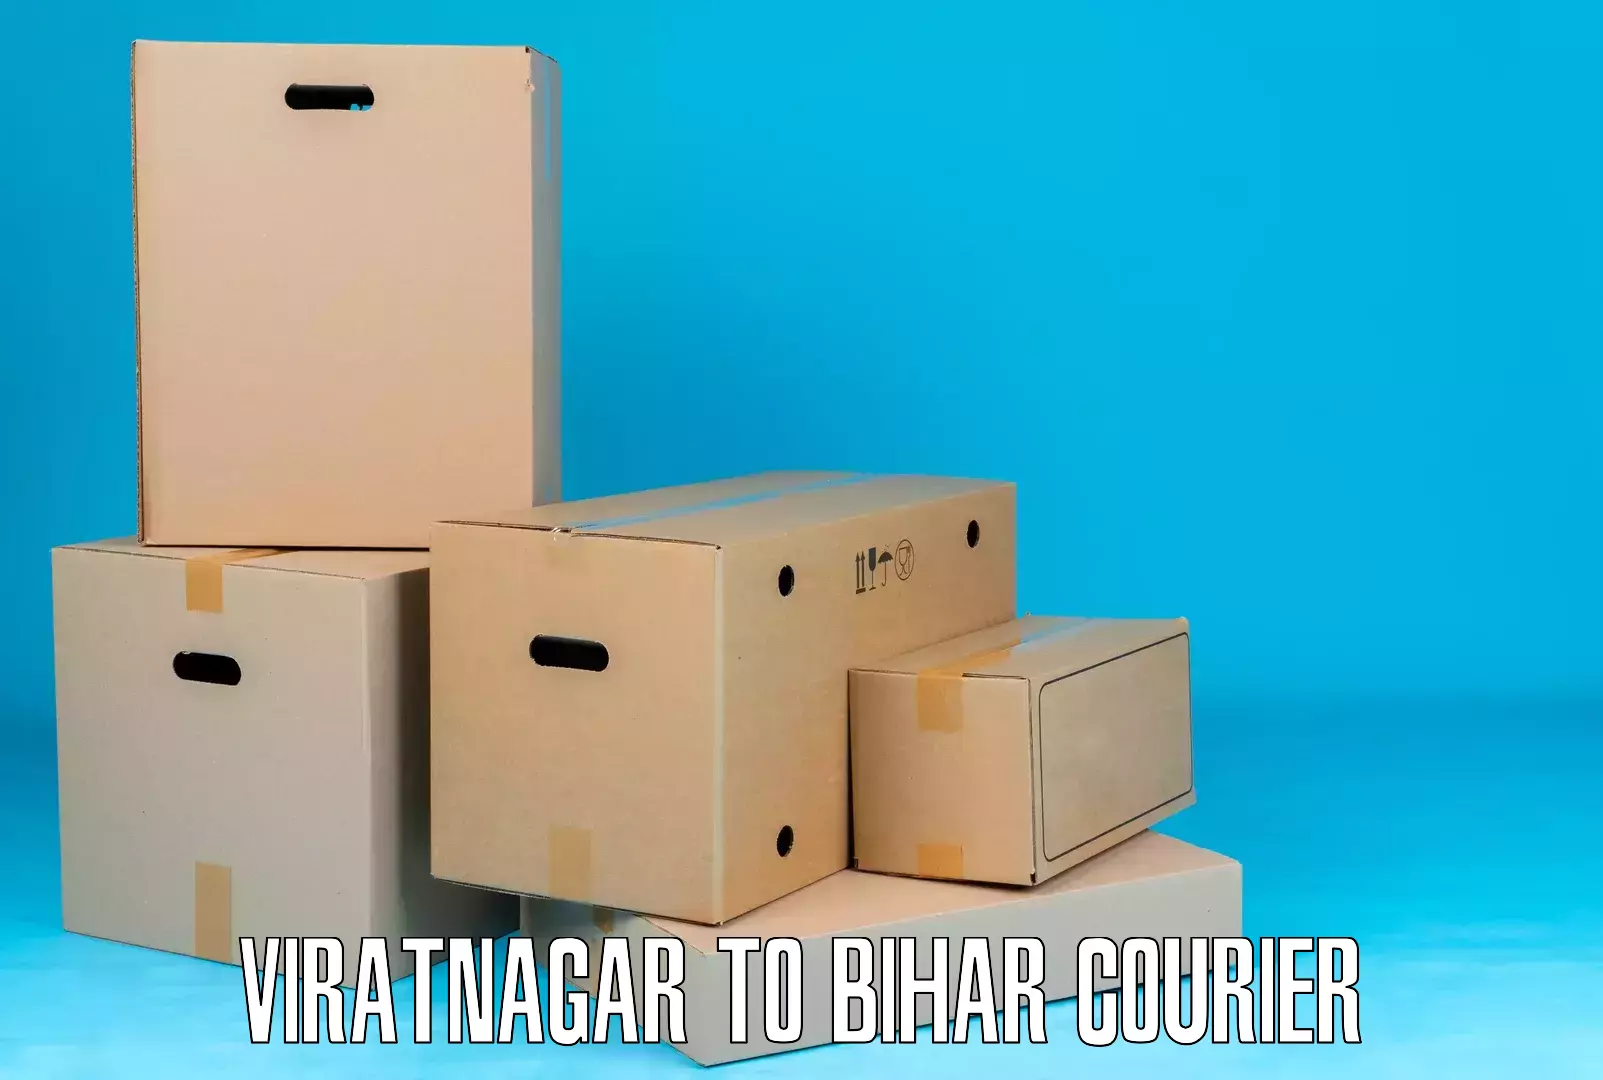 Reliable package handling Viratnagar to Kharagpur Munger